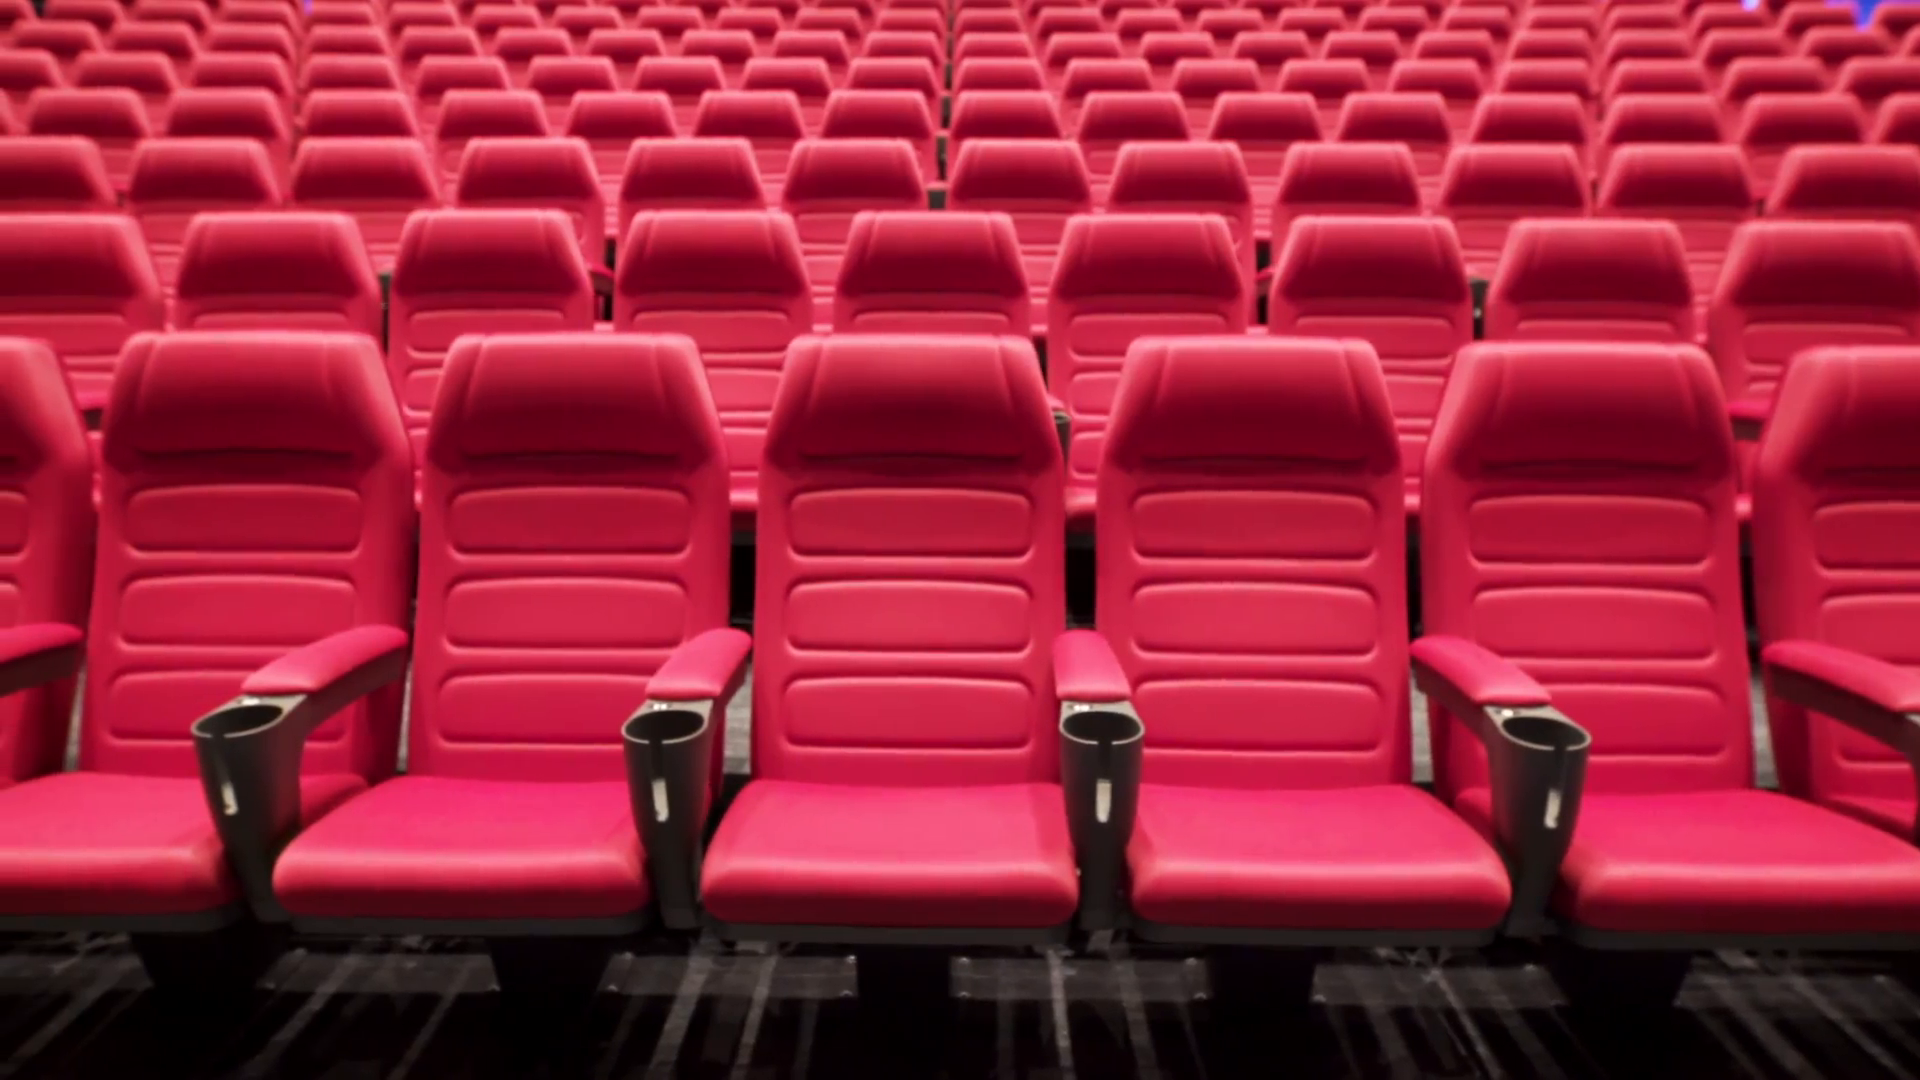 Theatre seats. Кресла в кинотеатре. Кресла в театре. Кинозал сиденья. Кресла для кинозала.